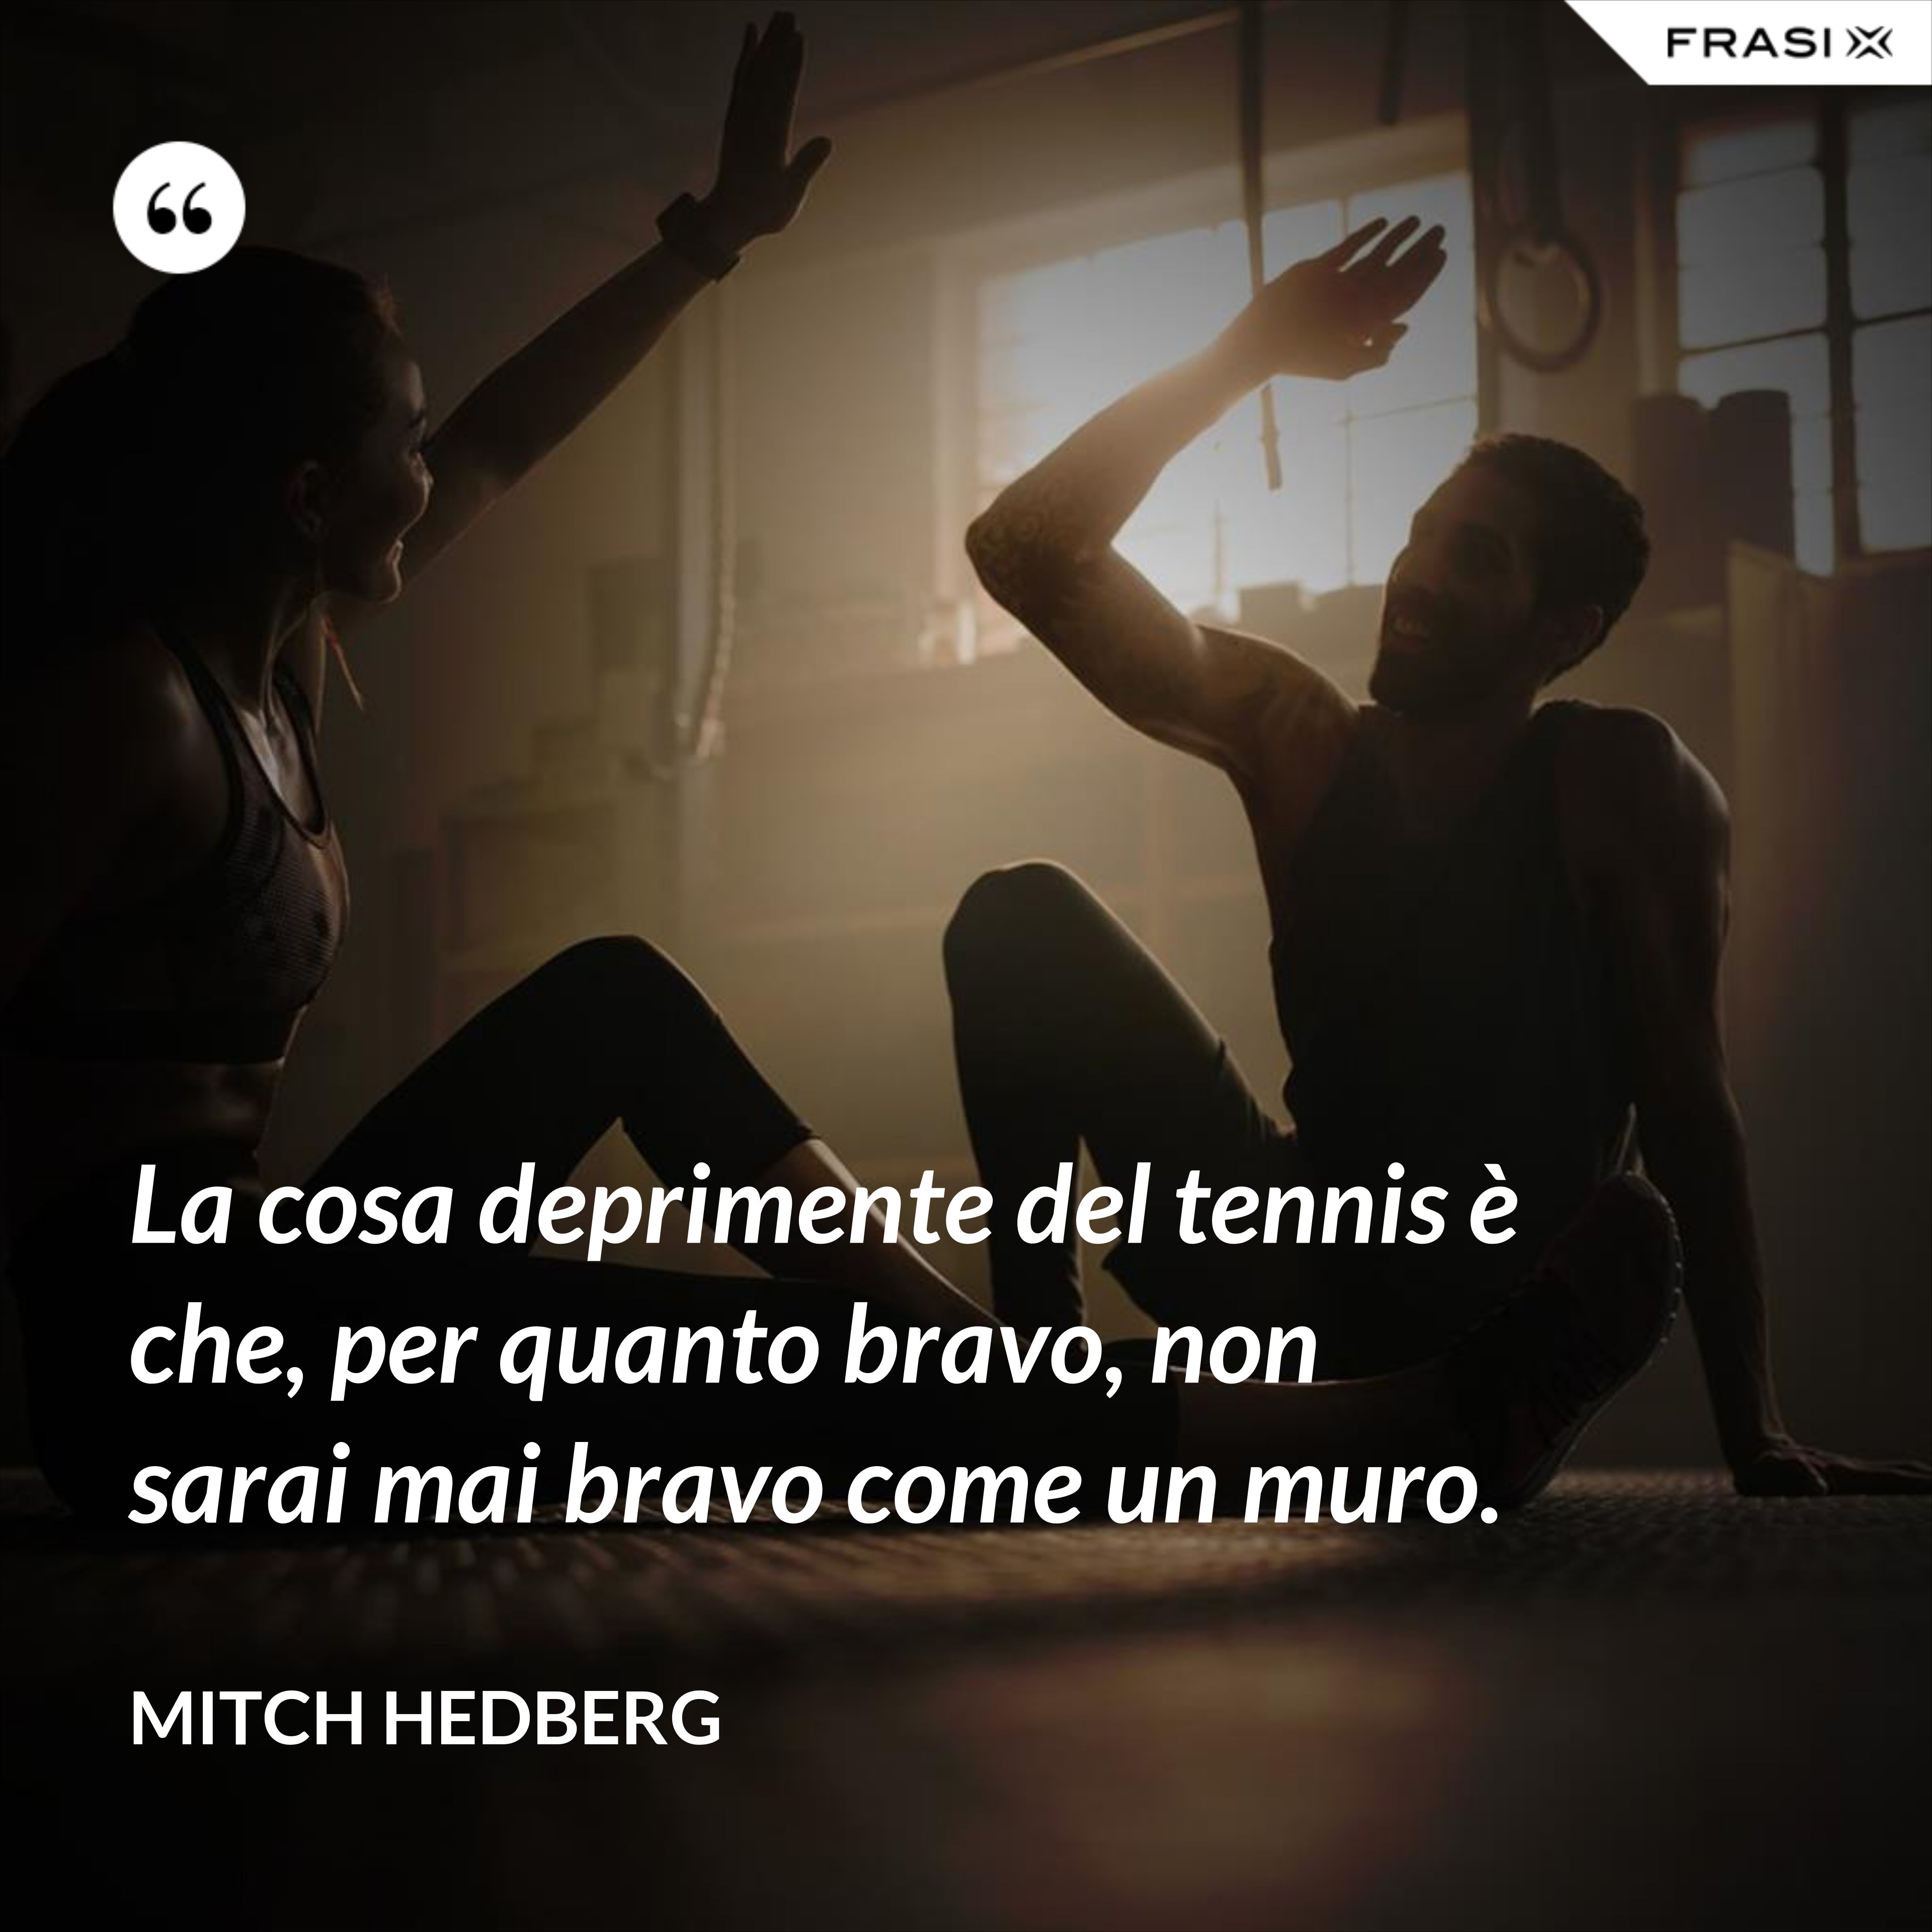 La cosa deprimente del tennis è che, per quanto bravo, non sarai mai bravo come un muro. - Mitch Hedberg